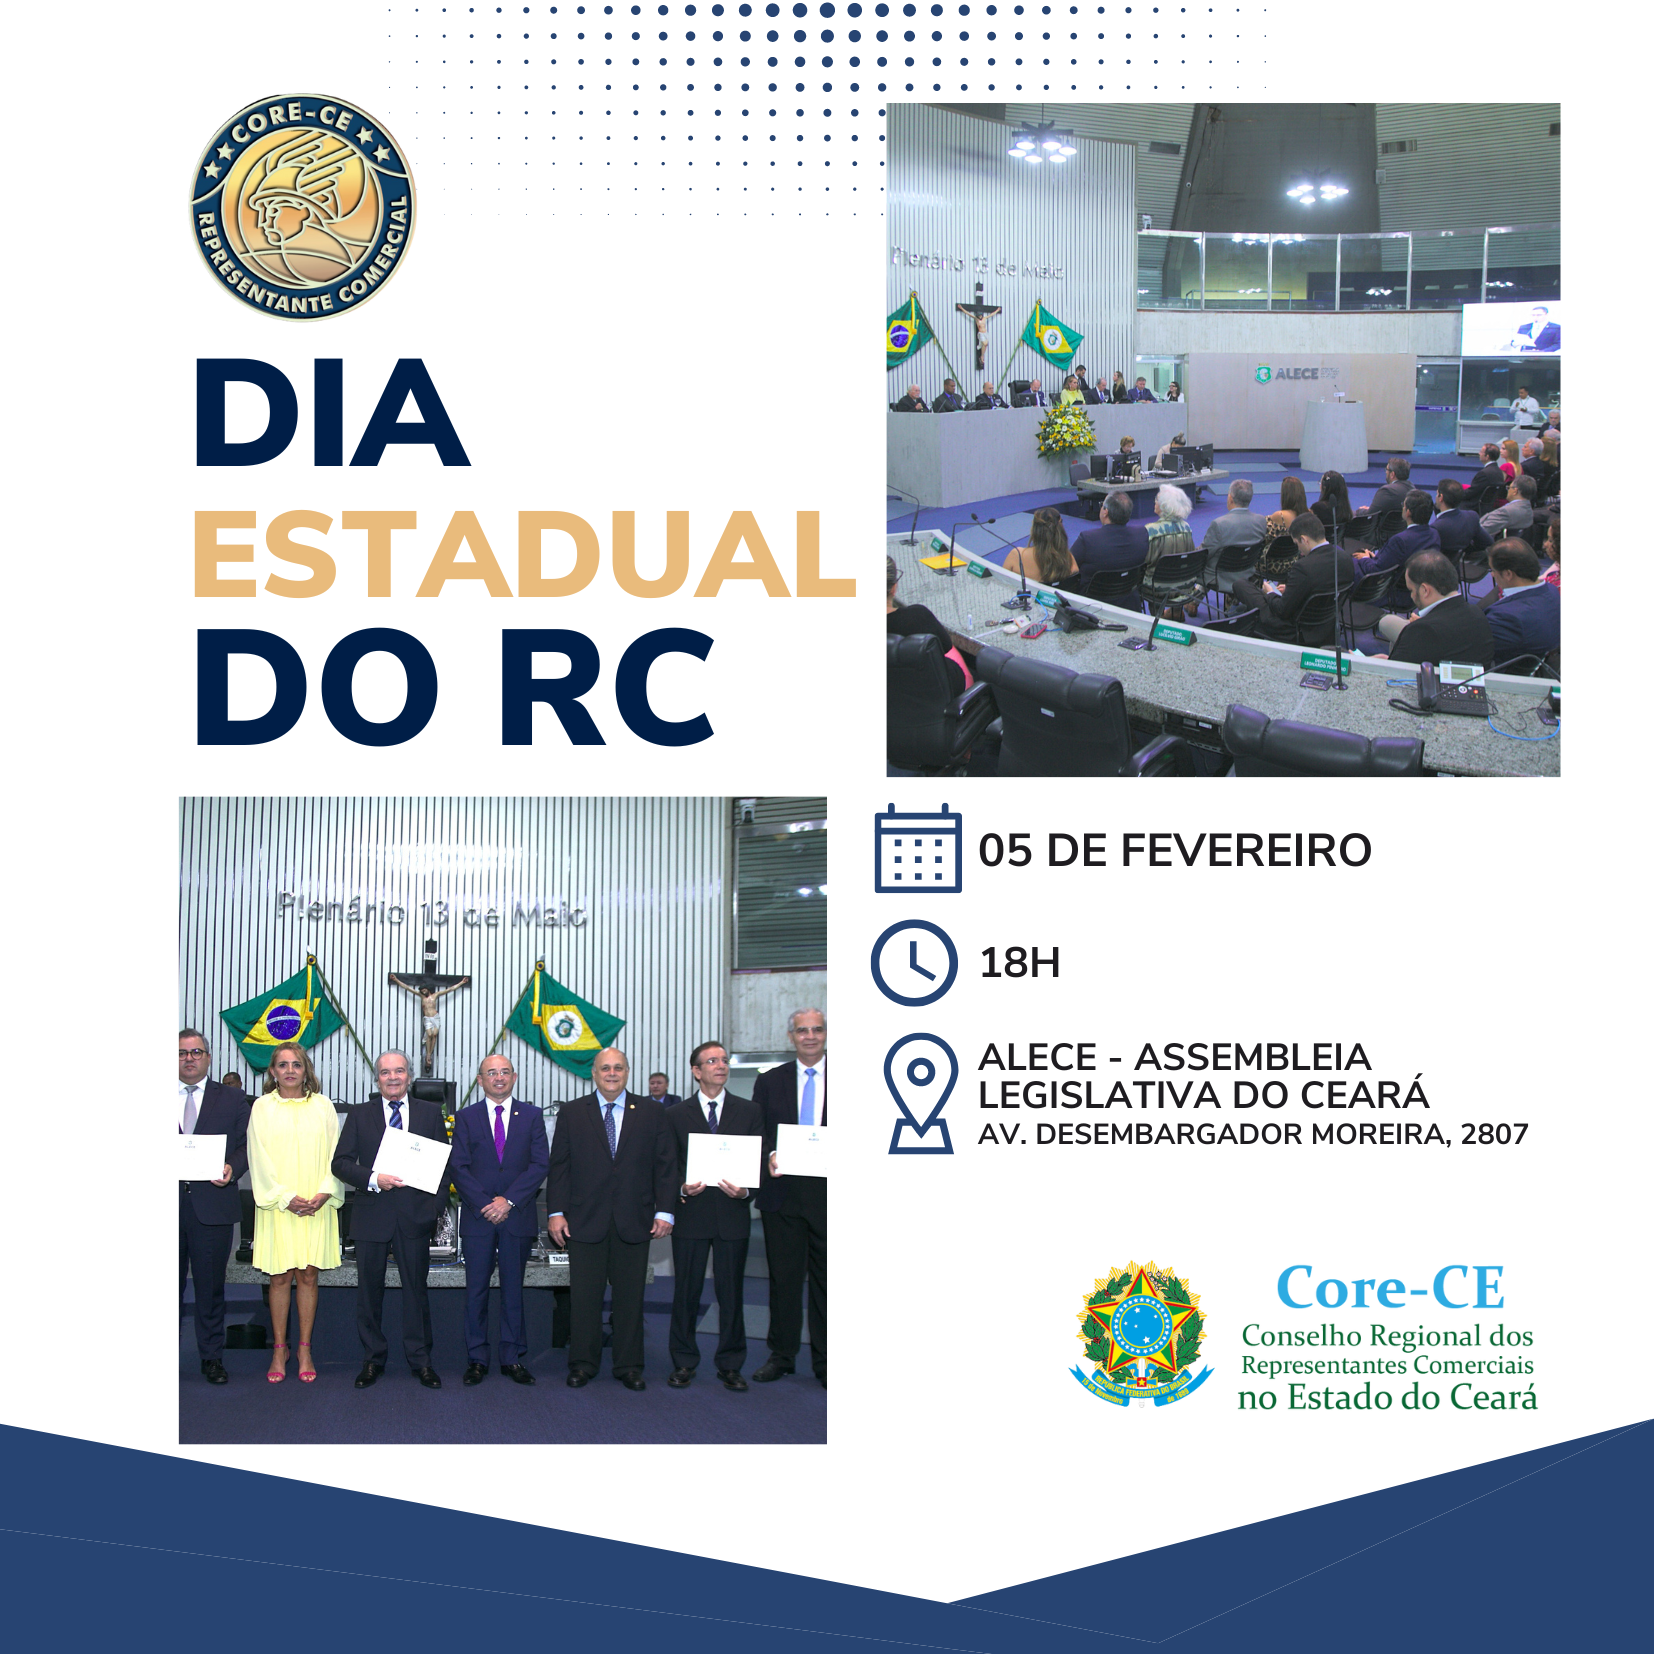 Dia Estadual do Representante Comercial será celebrado em Sessão Solene na Assembleia Legislativa do Estado do Ceará 